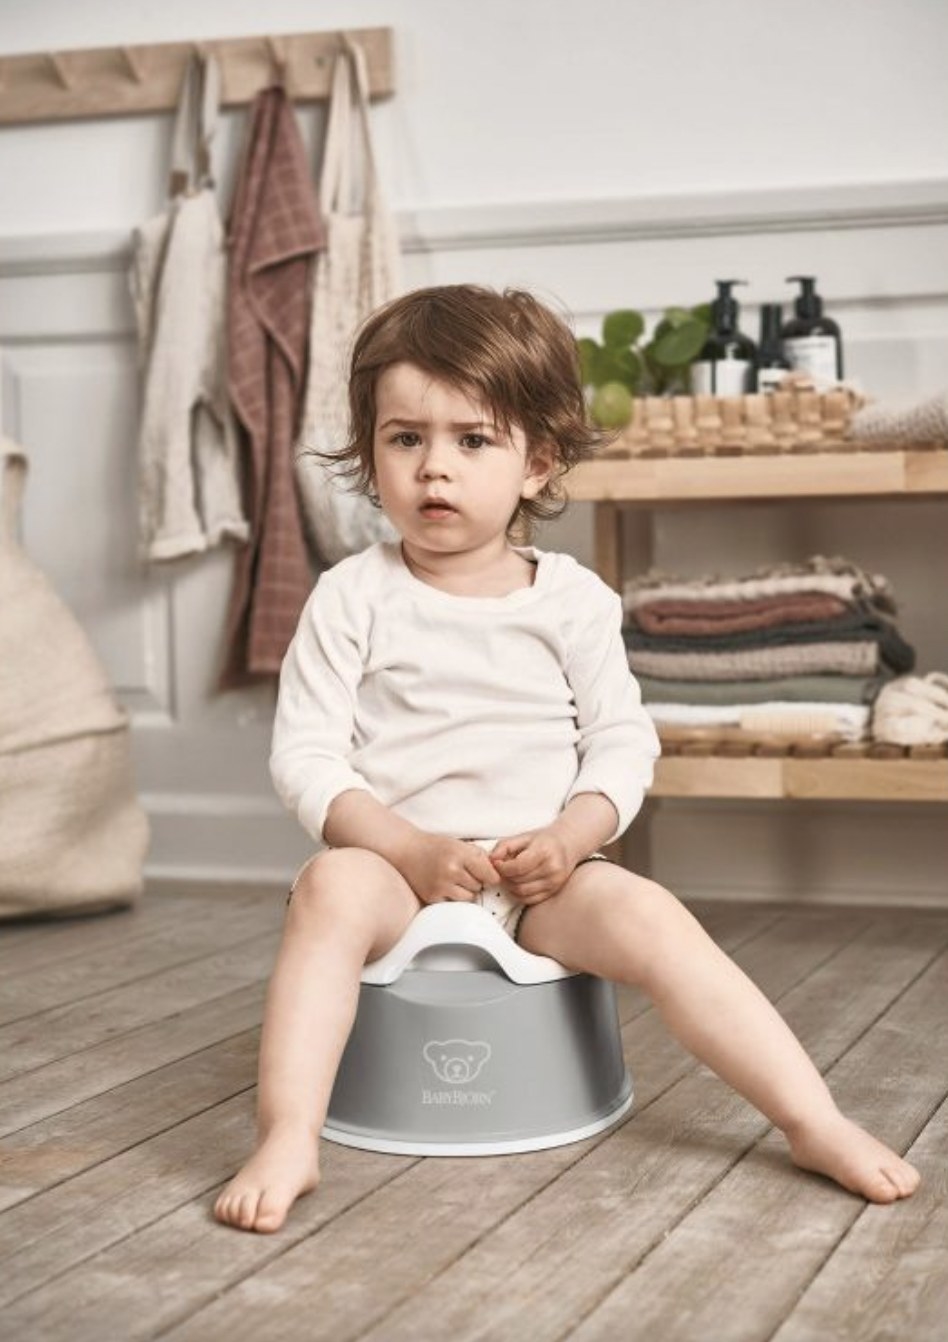 Baby sitting on travel potty